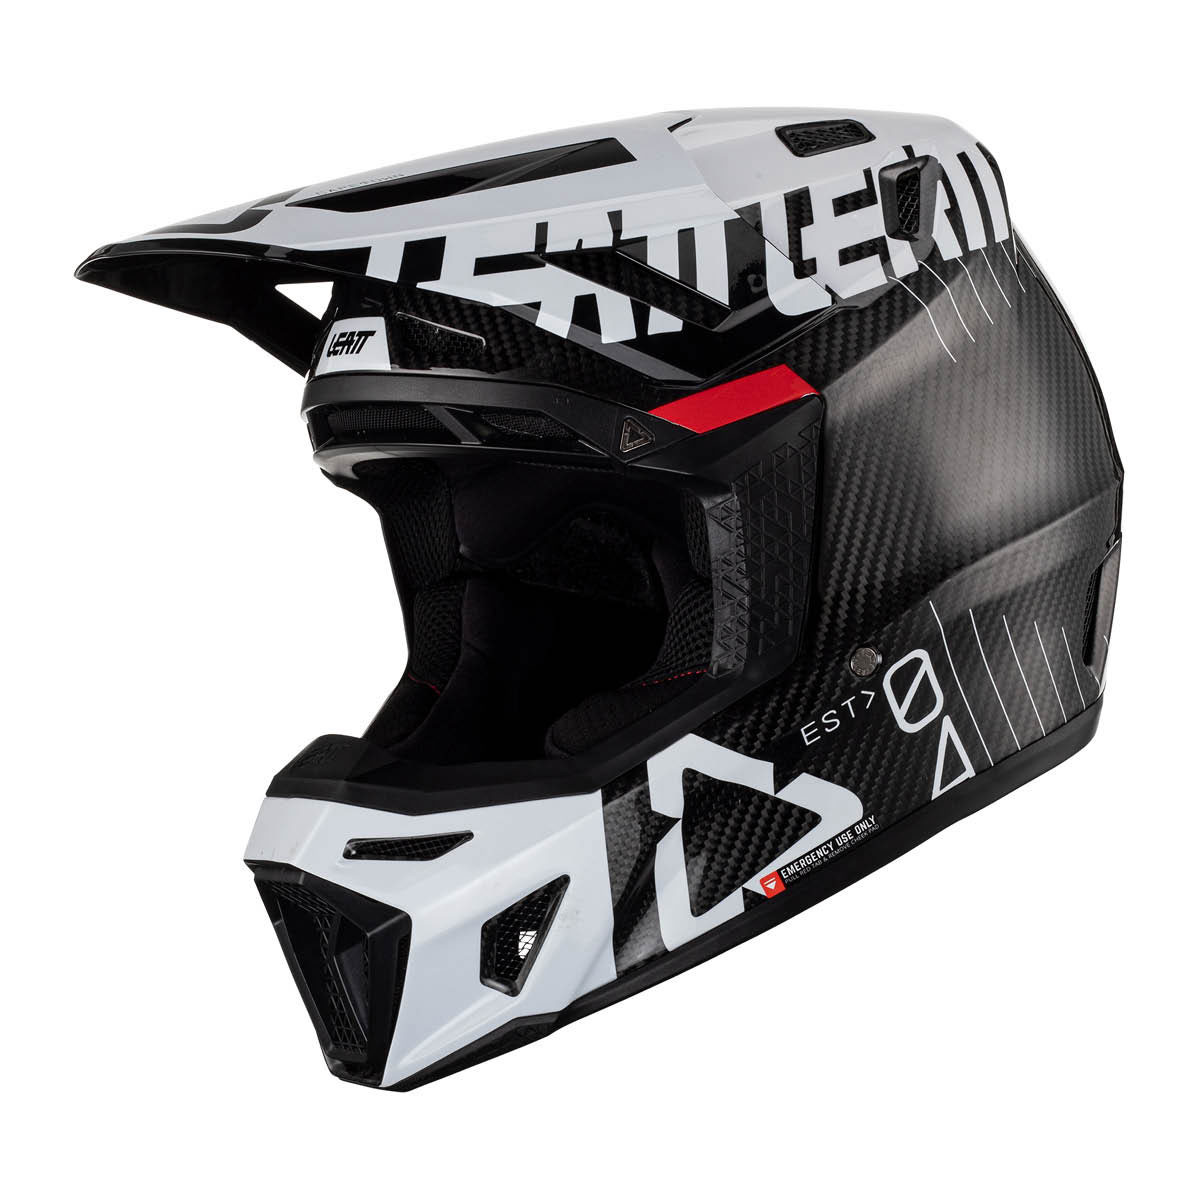 LEATT Motocross Helm Moto 9.5 Carbon V23 inkl. Bri, S carbon white